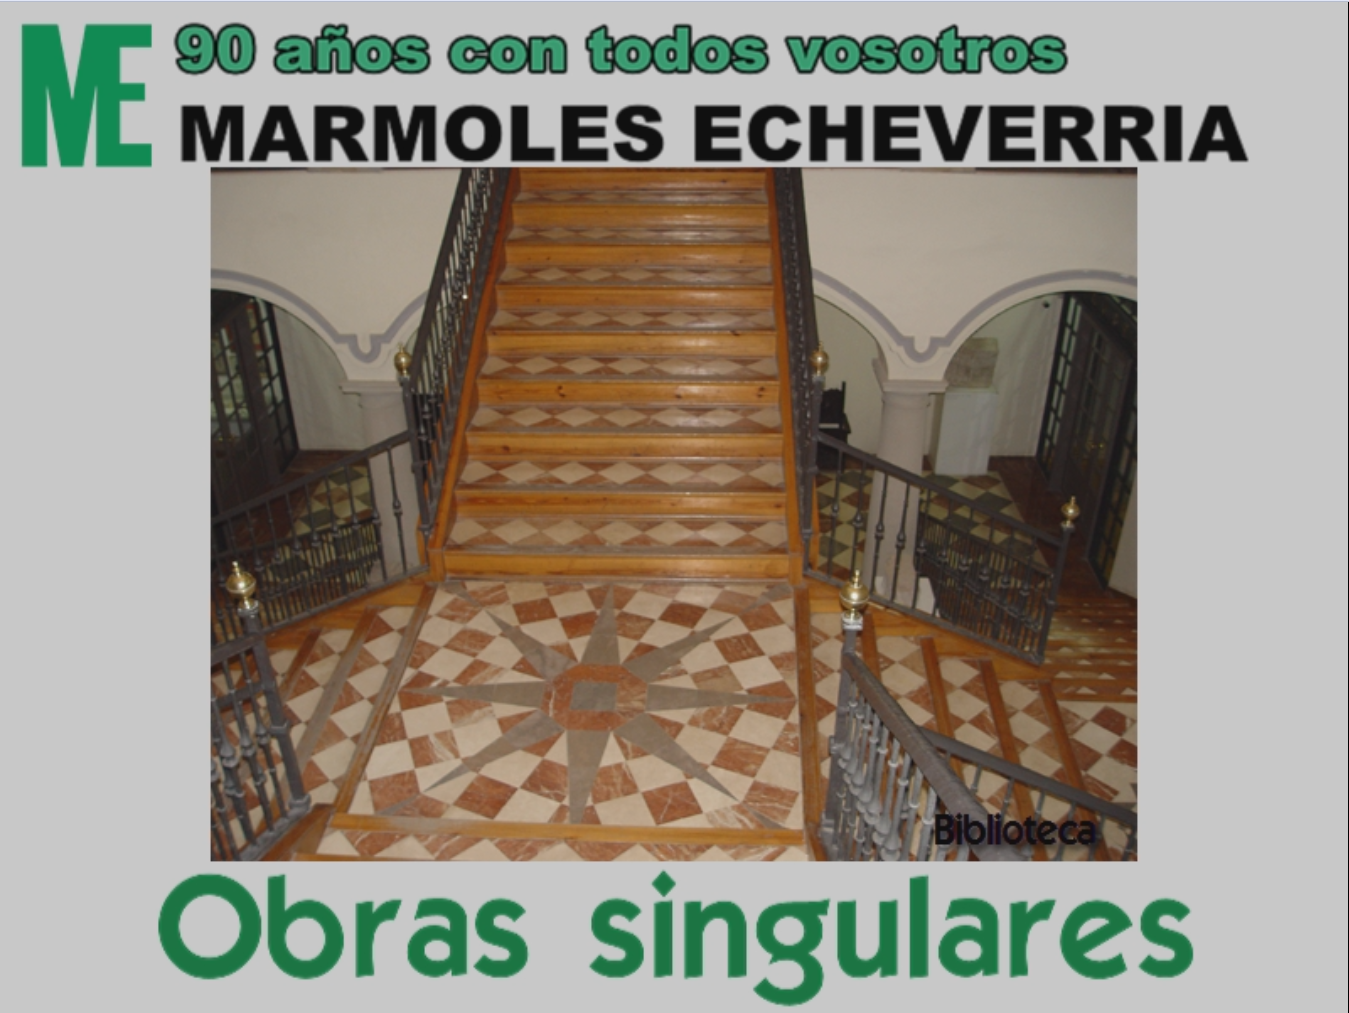 Images Mármoles Echeverría